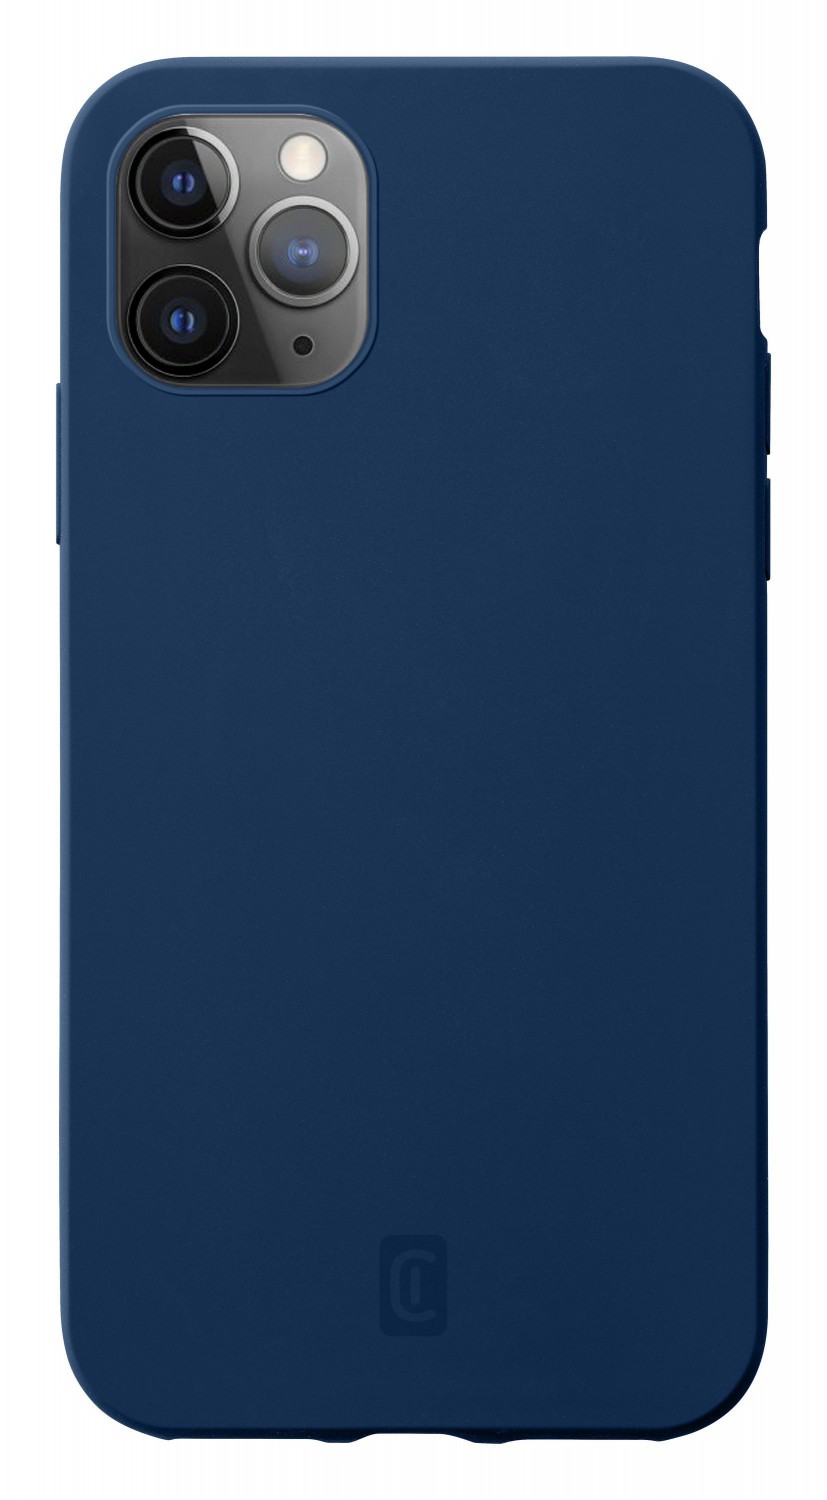 Cellularline Sensation silikonový kryt, obal Apple iPhone 12 Pro Max blue